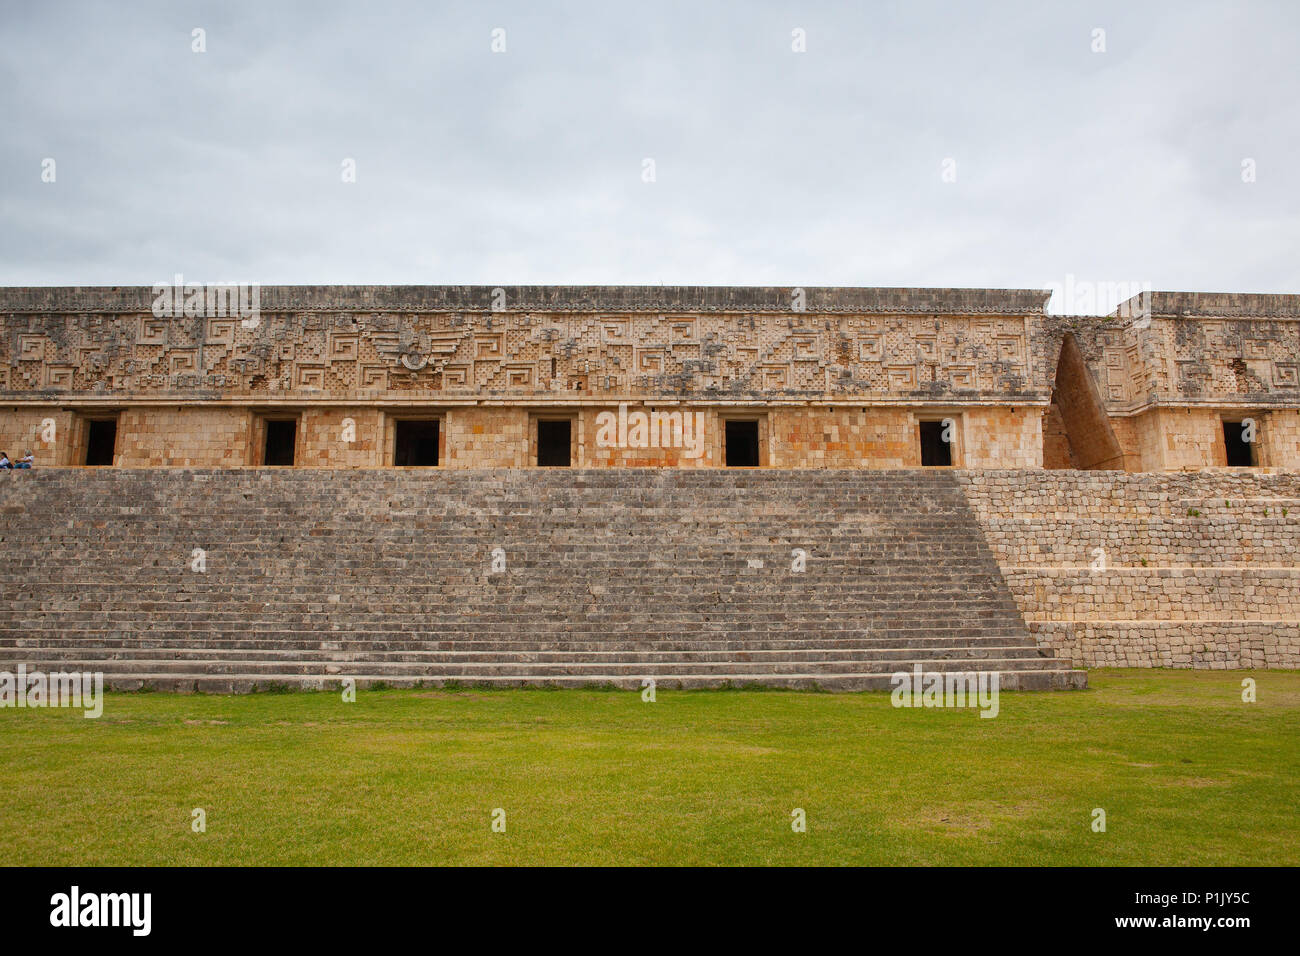 Majestätische Ruinen in Uxmal, Mexiko. Uxmal ist eine alte Maya Stadt der klassischen Periode im heutigen Mexiko. Stockfoto